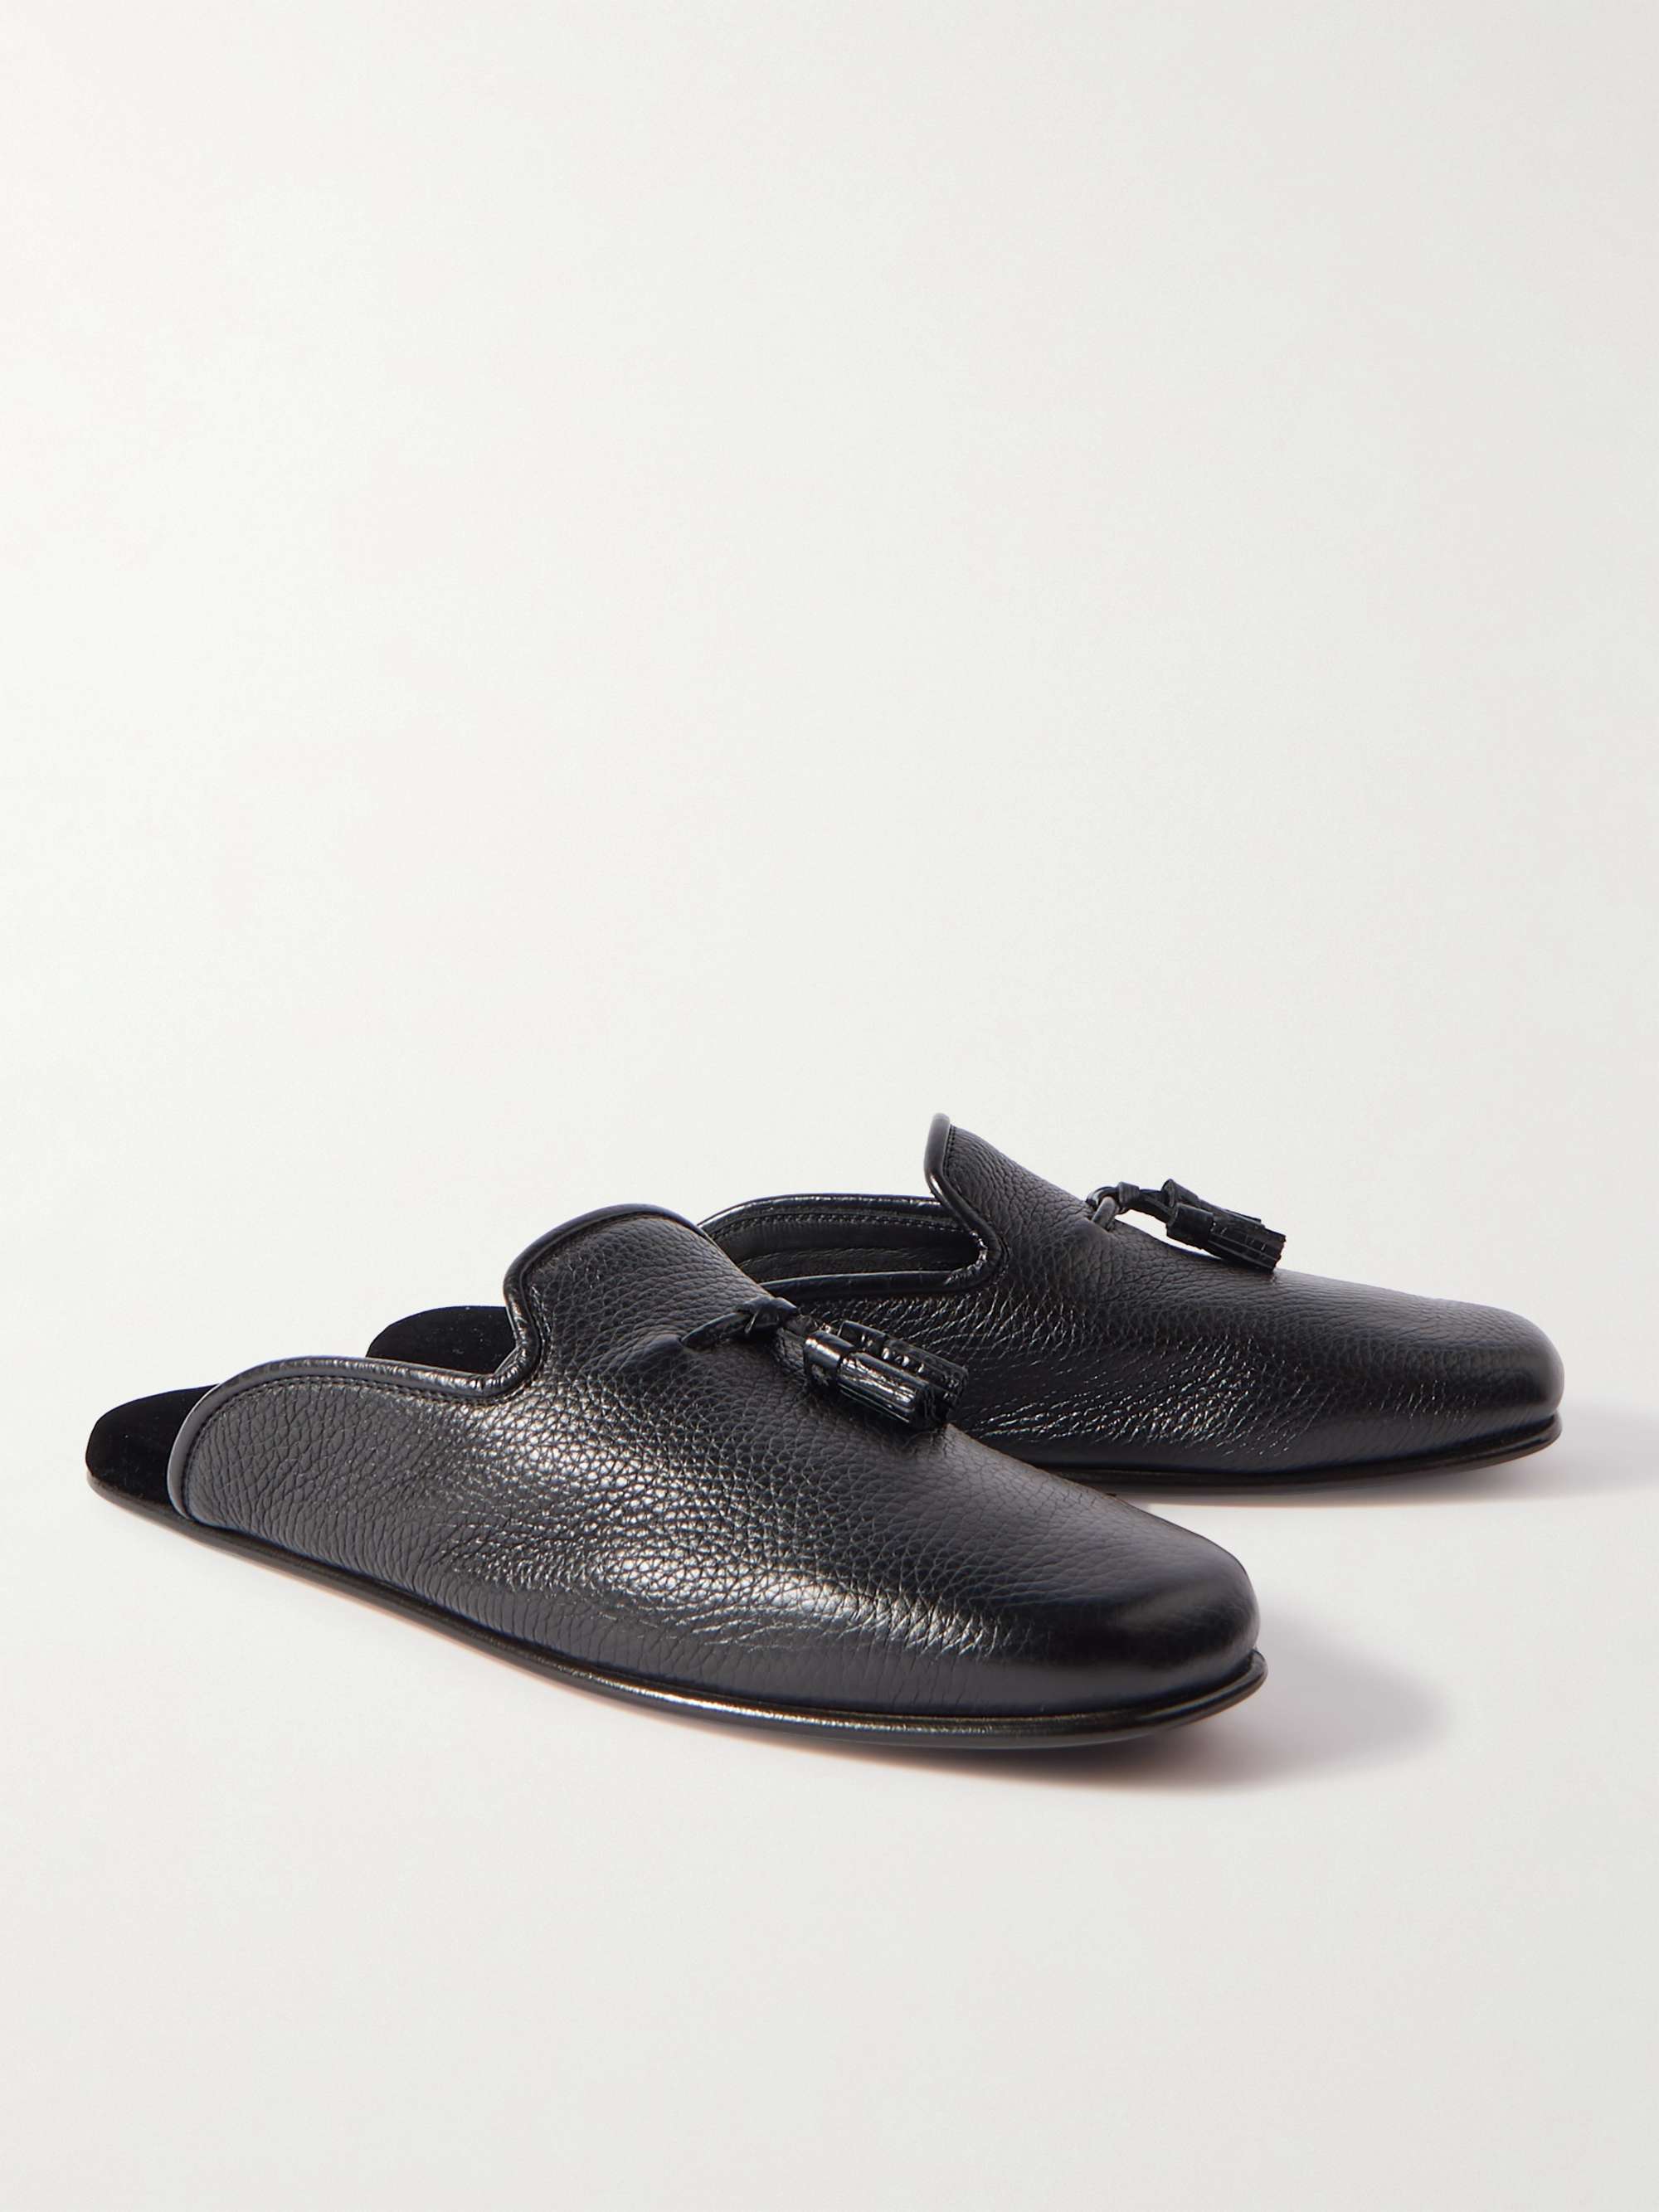 TOM FORD Winston Full-Grain Leather Tasselled Slippers for Men | MR PORTER